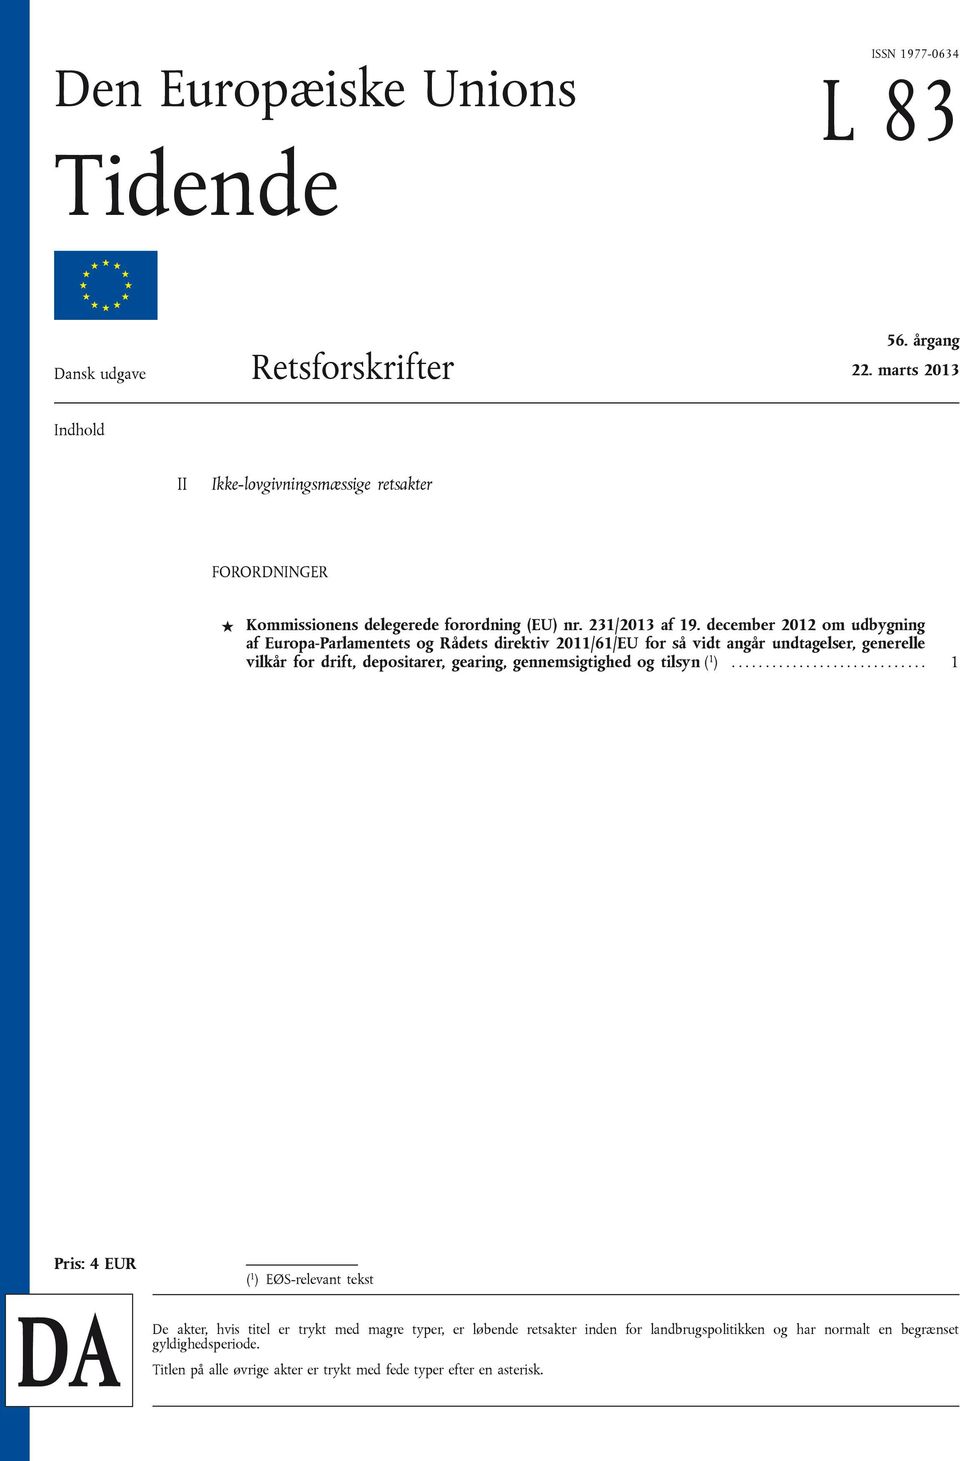 december 2012 om udbygning af Europa-Parlamentets og Rådets direktiv 2011/61/EU for så vidt angår undtagelser, generelle vilkår for drift, depositarer, gearing,